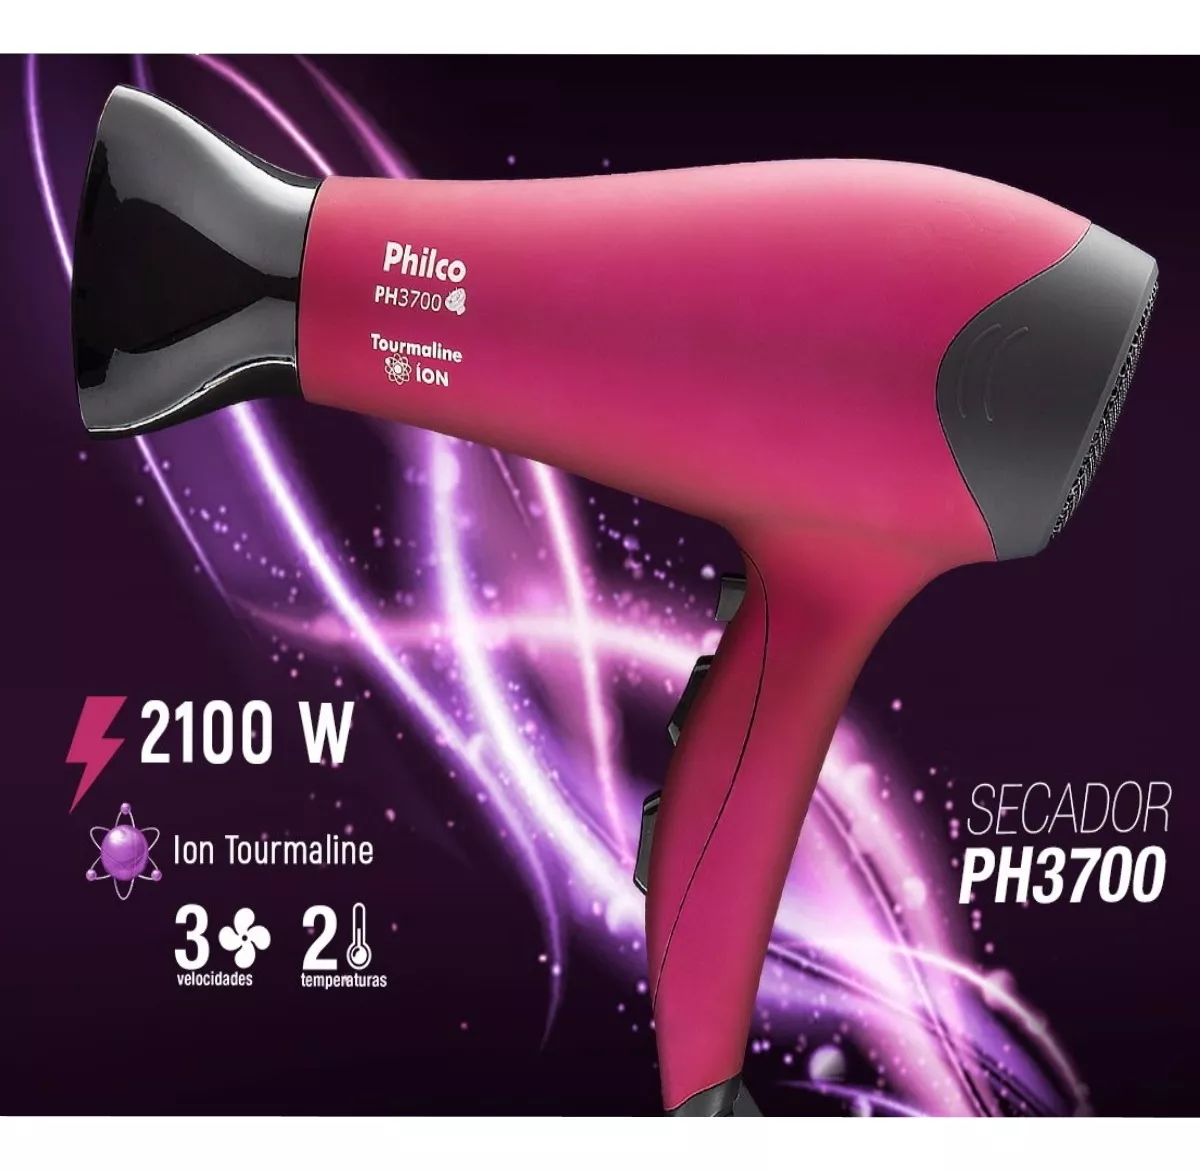 Secador de Cabelo Philco PH3700 Pink 2000W 220V - 7